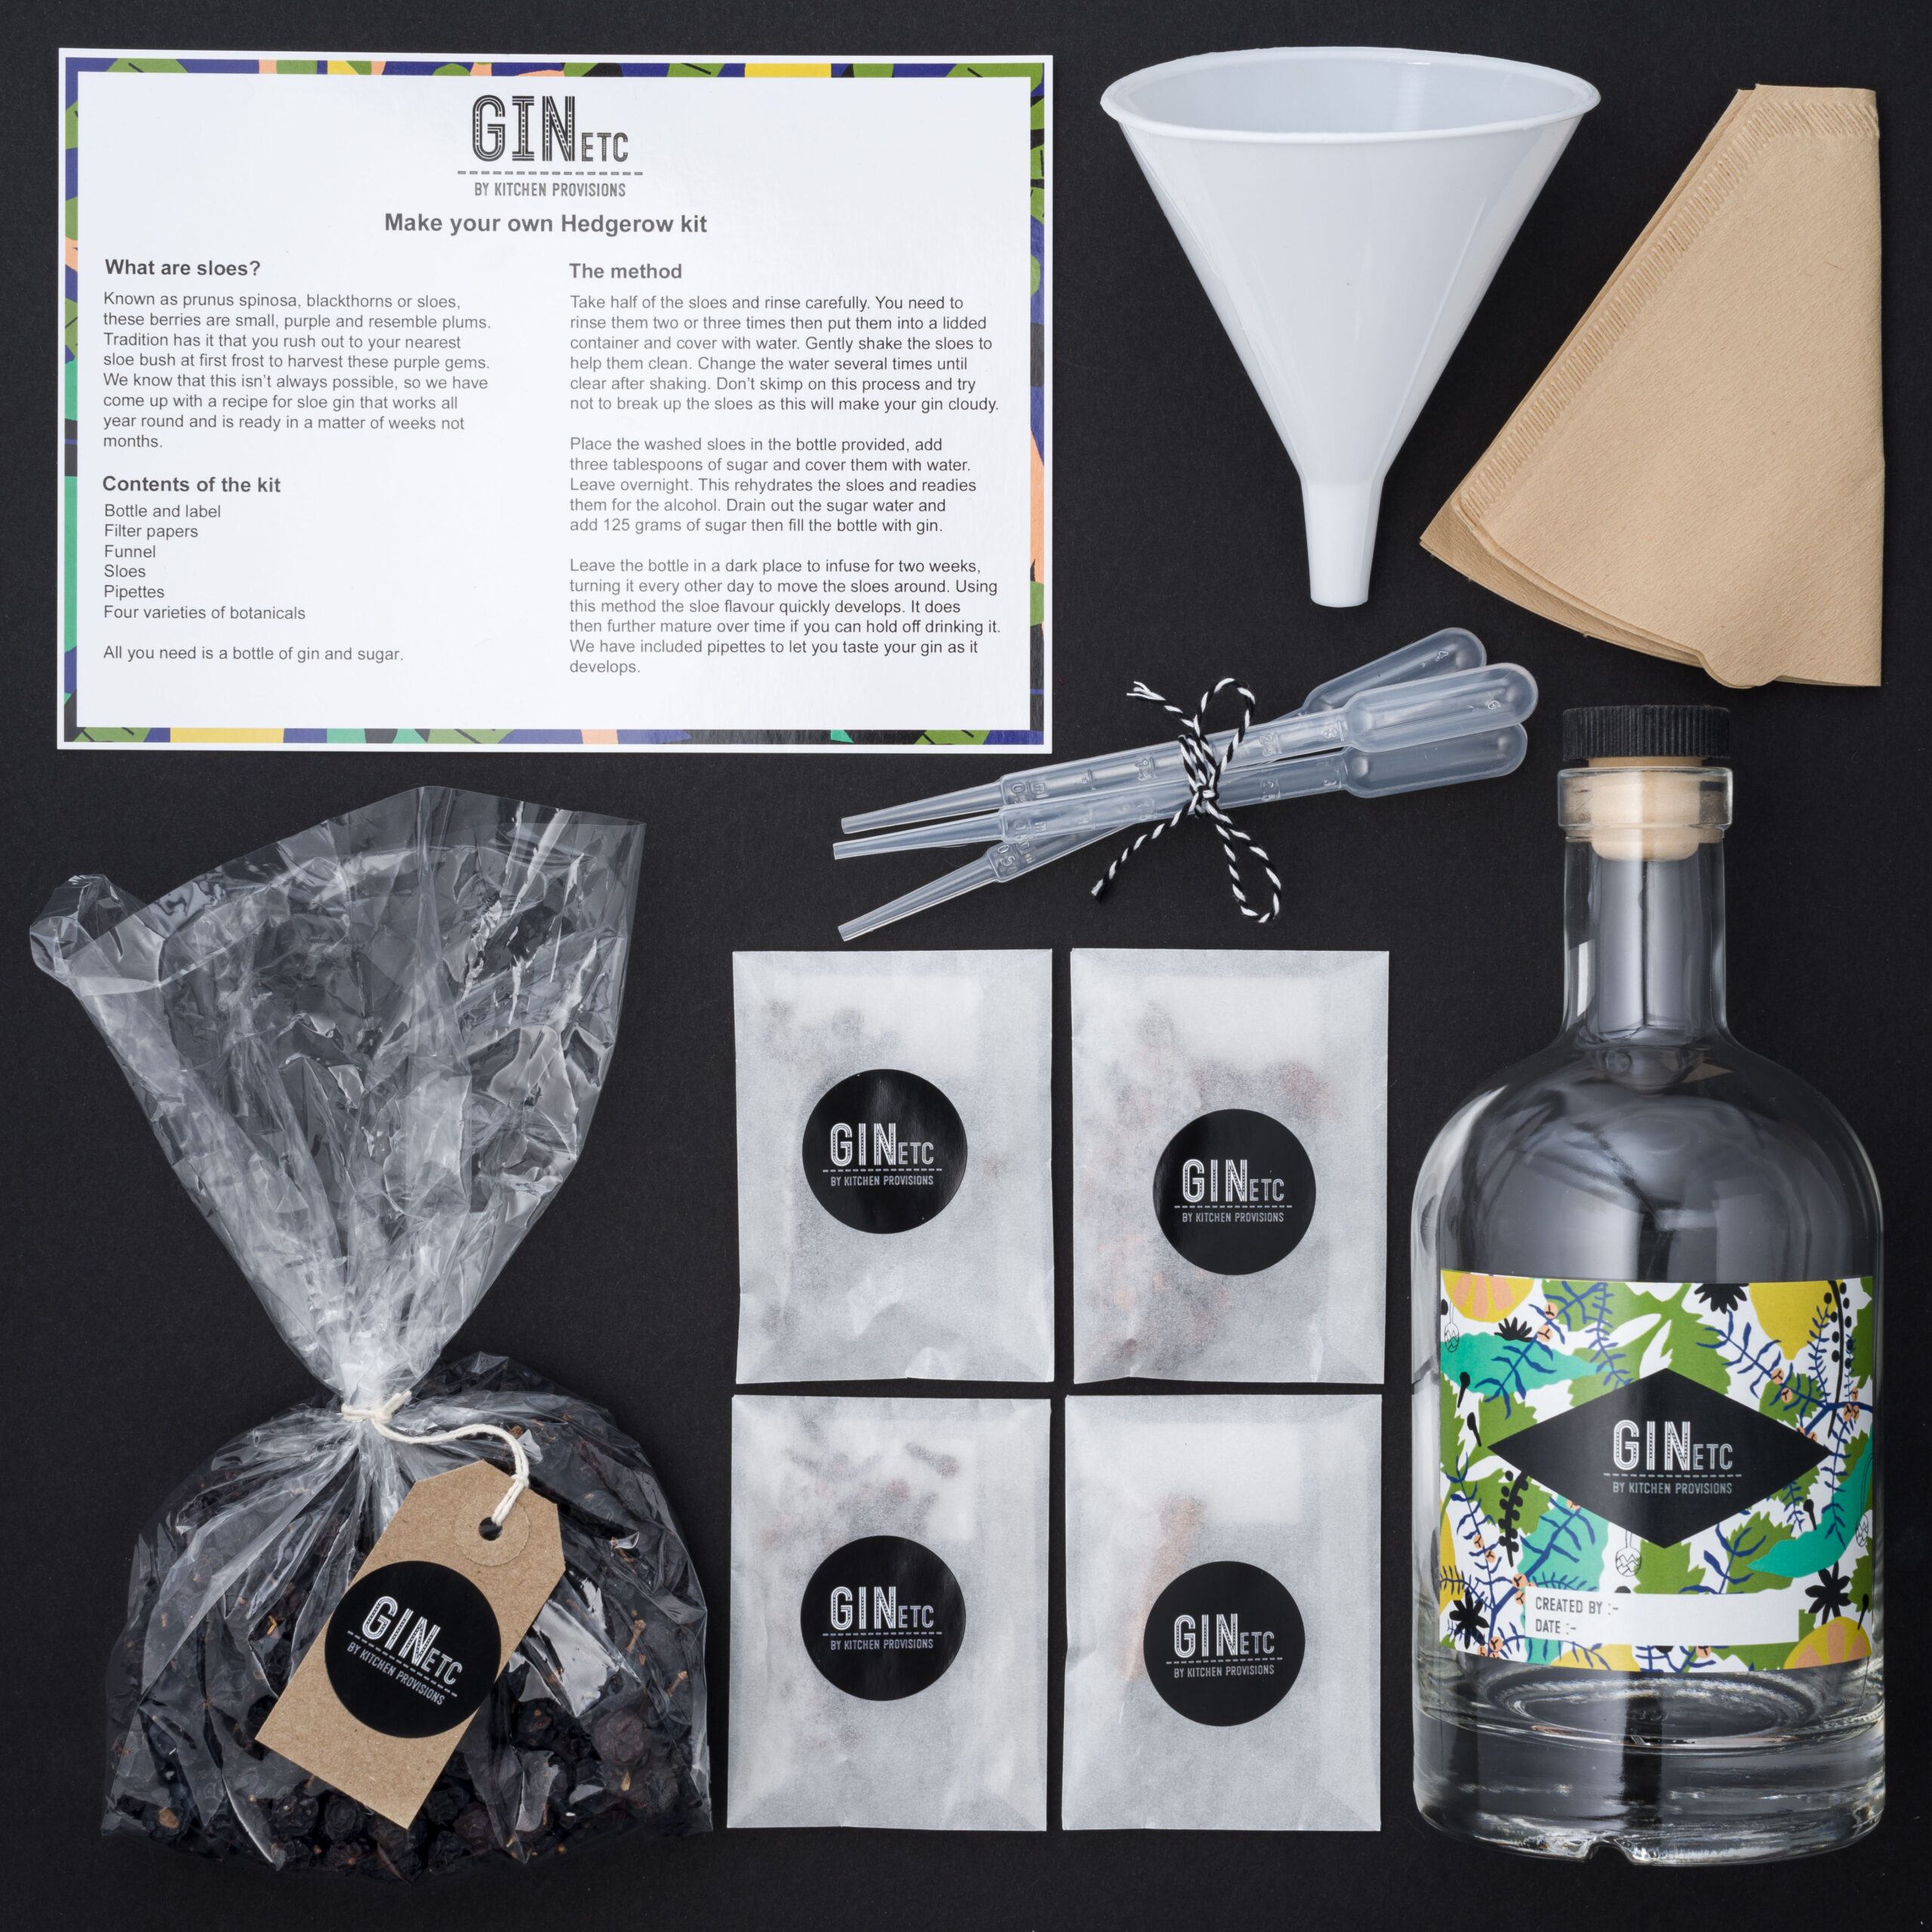 DO YOUR GIN! - DIY Craft Gin Kit